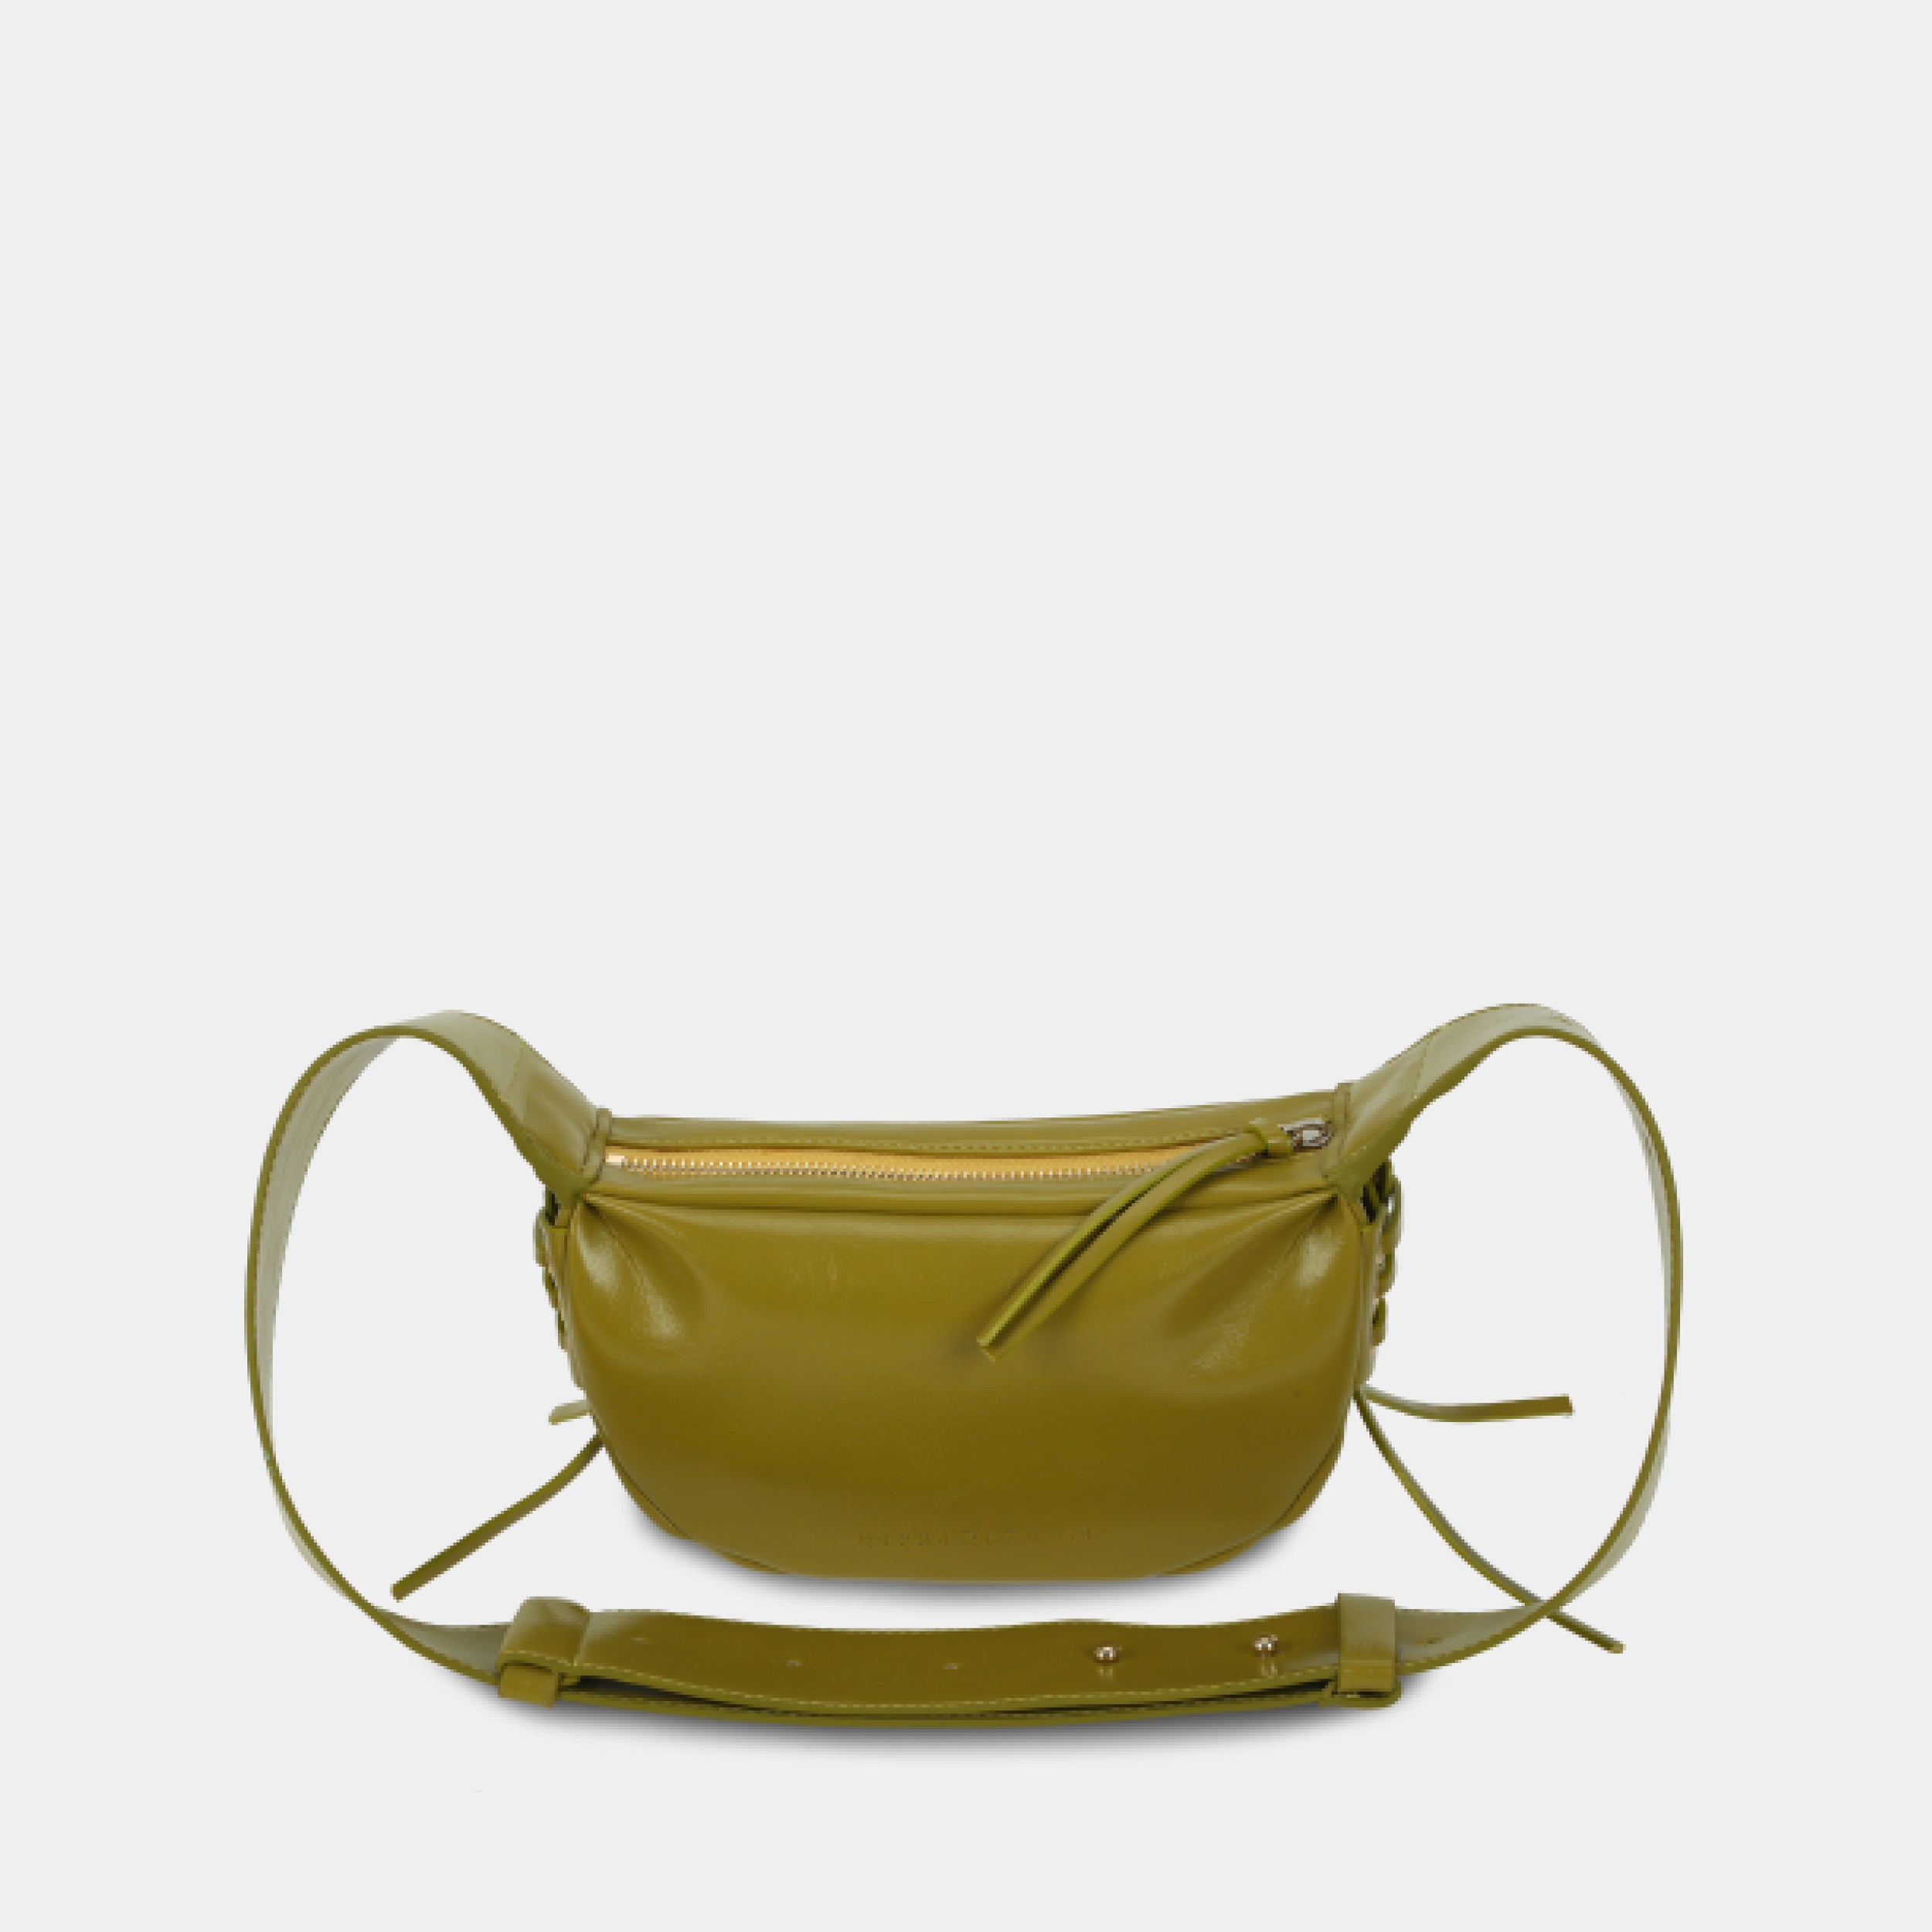 Túi xách LACE size nhỏ (S) màu vàng dưa cải